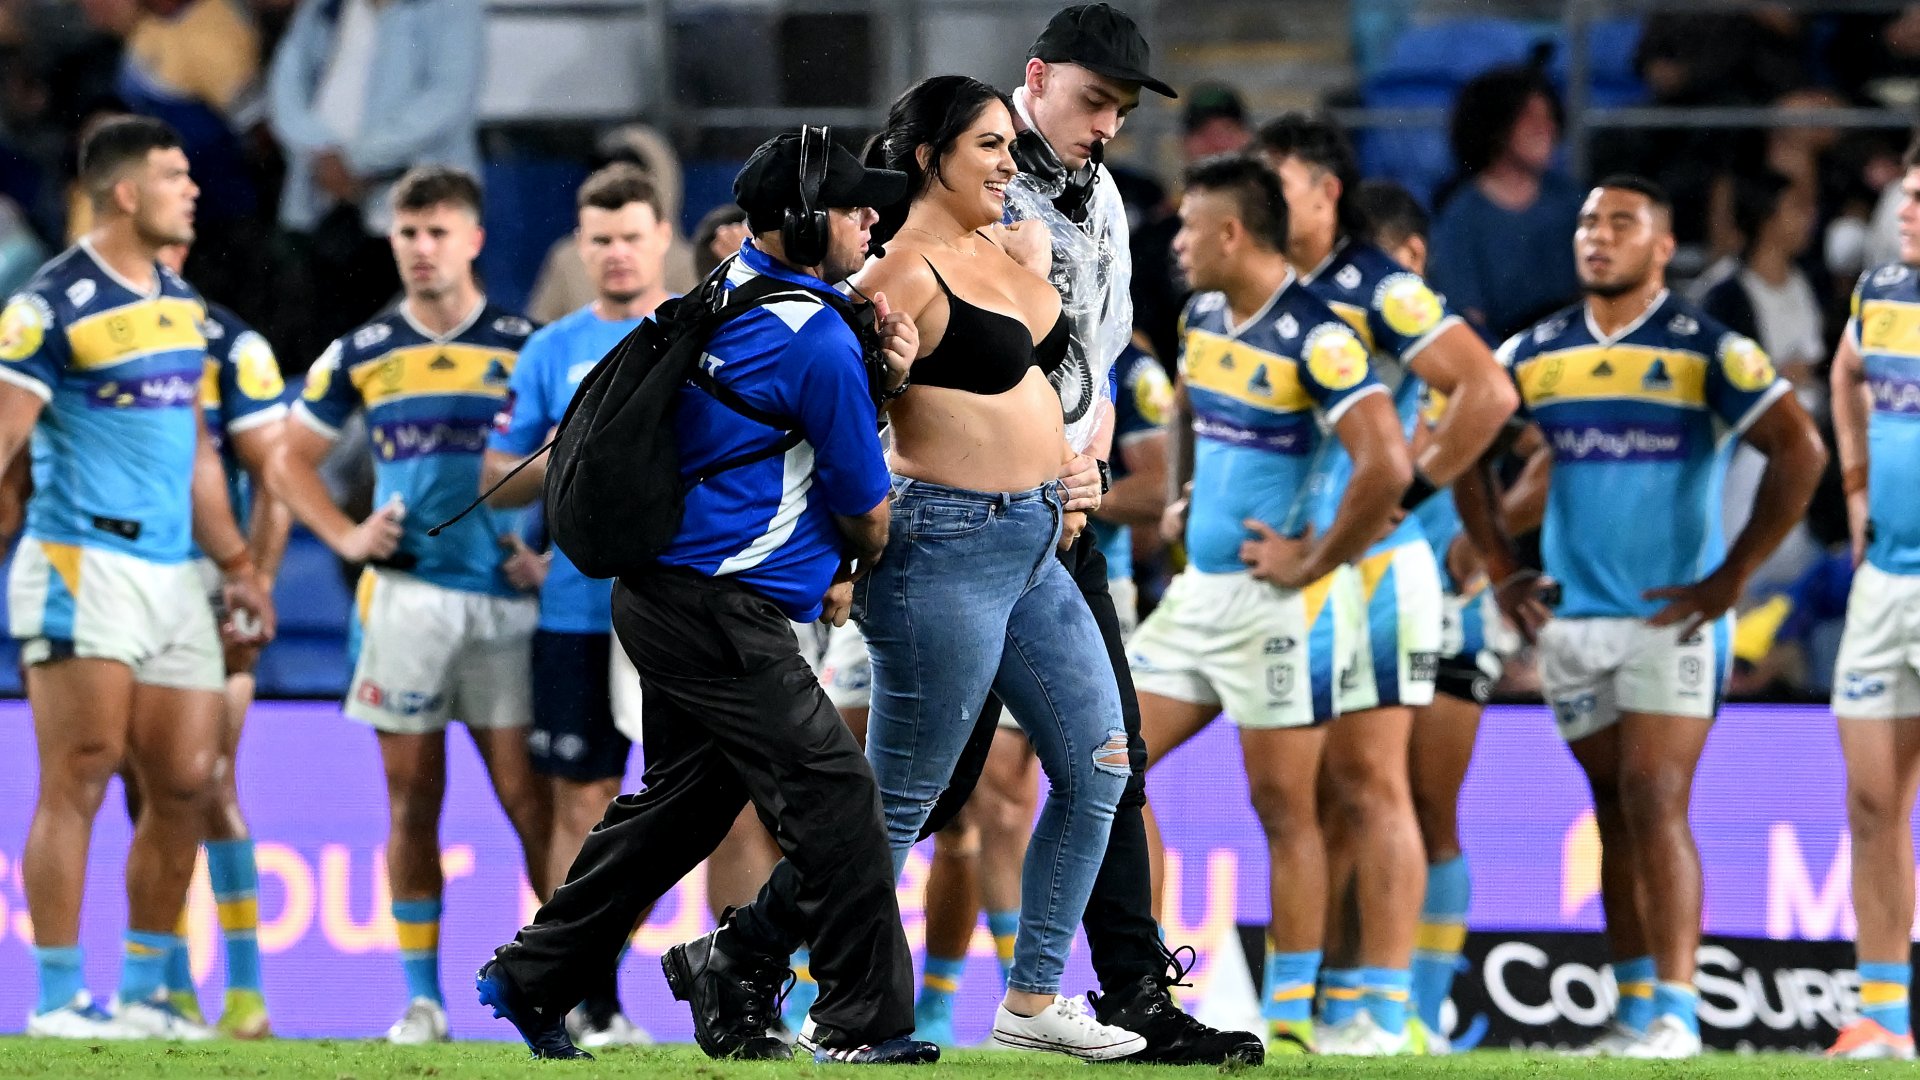 A biztonsági őrök egy beszaladó nőt visznek el a pályáról a Gold Coast Titans és a Parramatta Eels közötti NRL-mérkőzés ötödik fordulójában a Cbus Super Stadiumban, 2022. április 09-én, az ausztráliai Gold Coastban